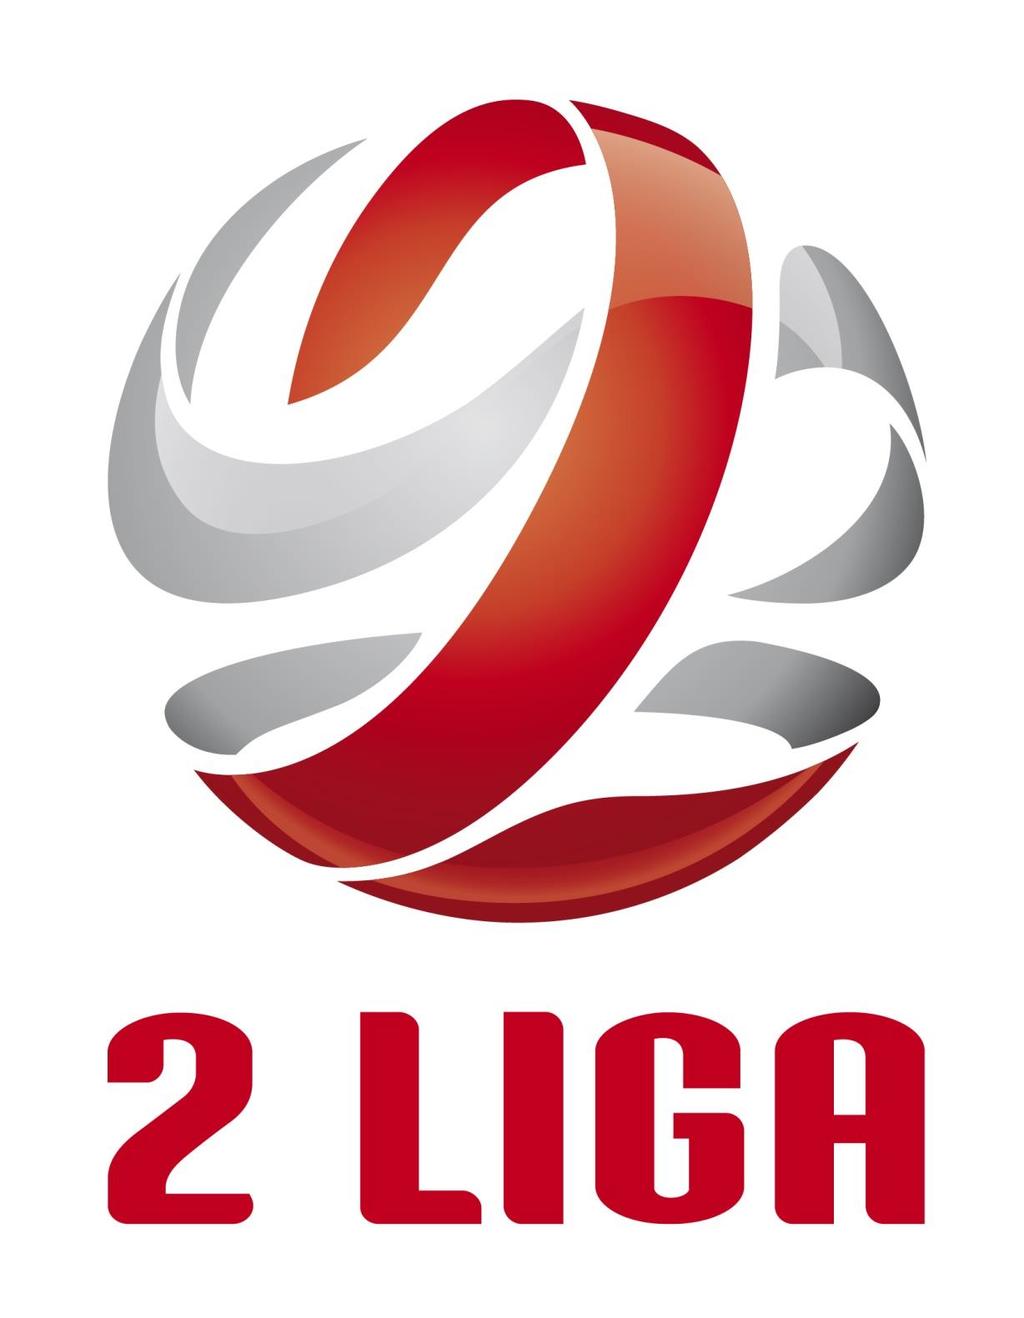 Załącznik nr 2 do Uchwały nr III/51 z dnia 27 marca 2015 roku Zarządu Polskiego Związku Piłki